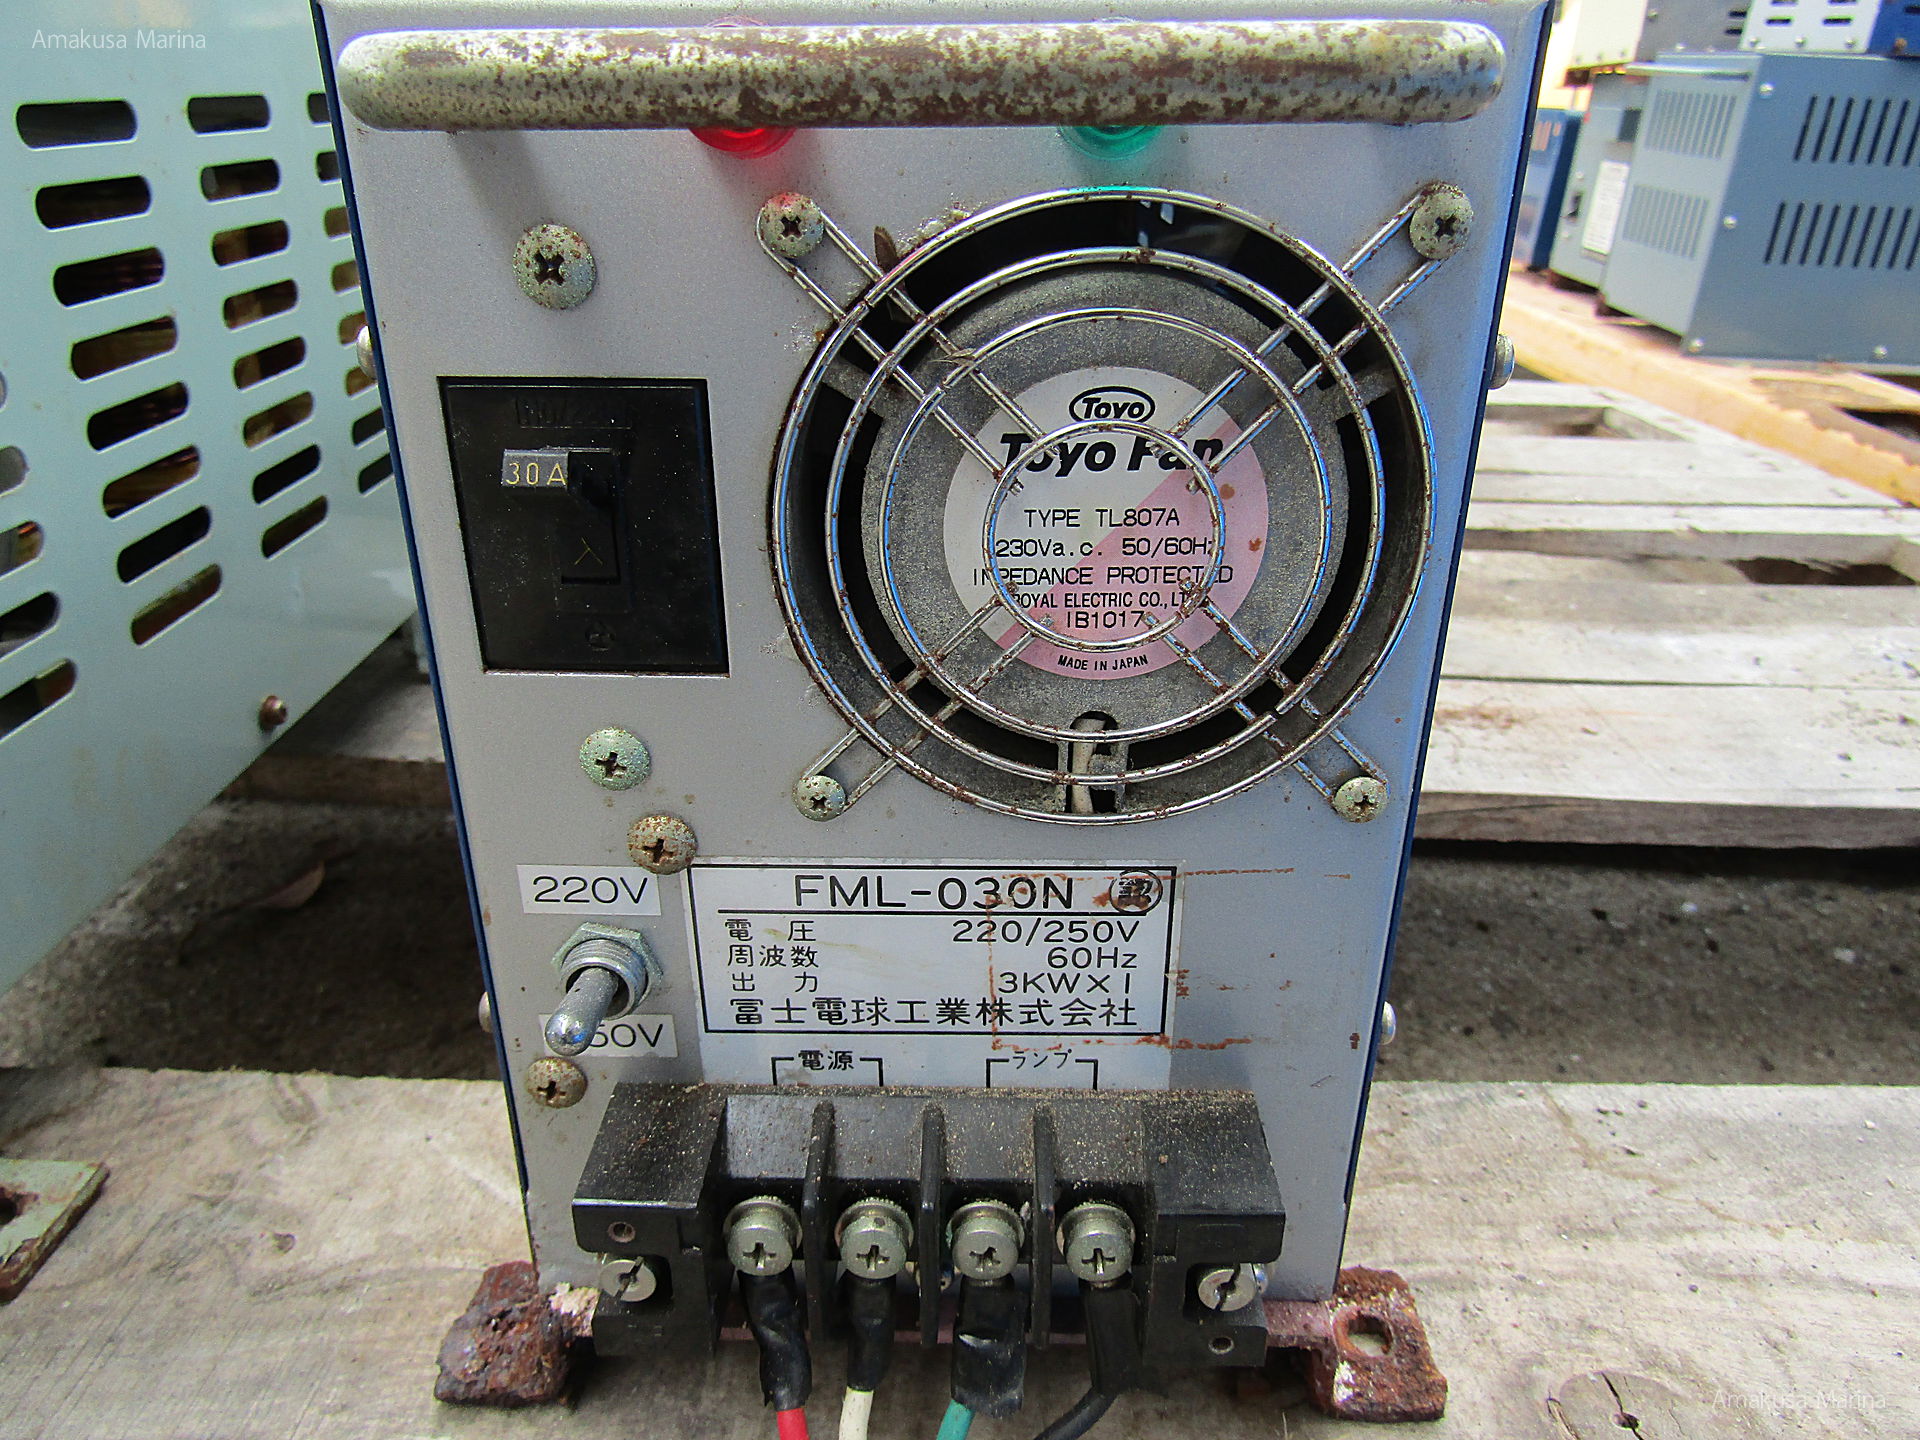 富士電球 集魚灯安定器 FML-030N 3kw | 株式会社あまくさマリーナ